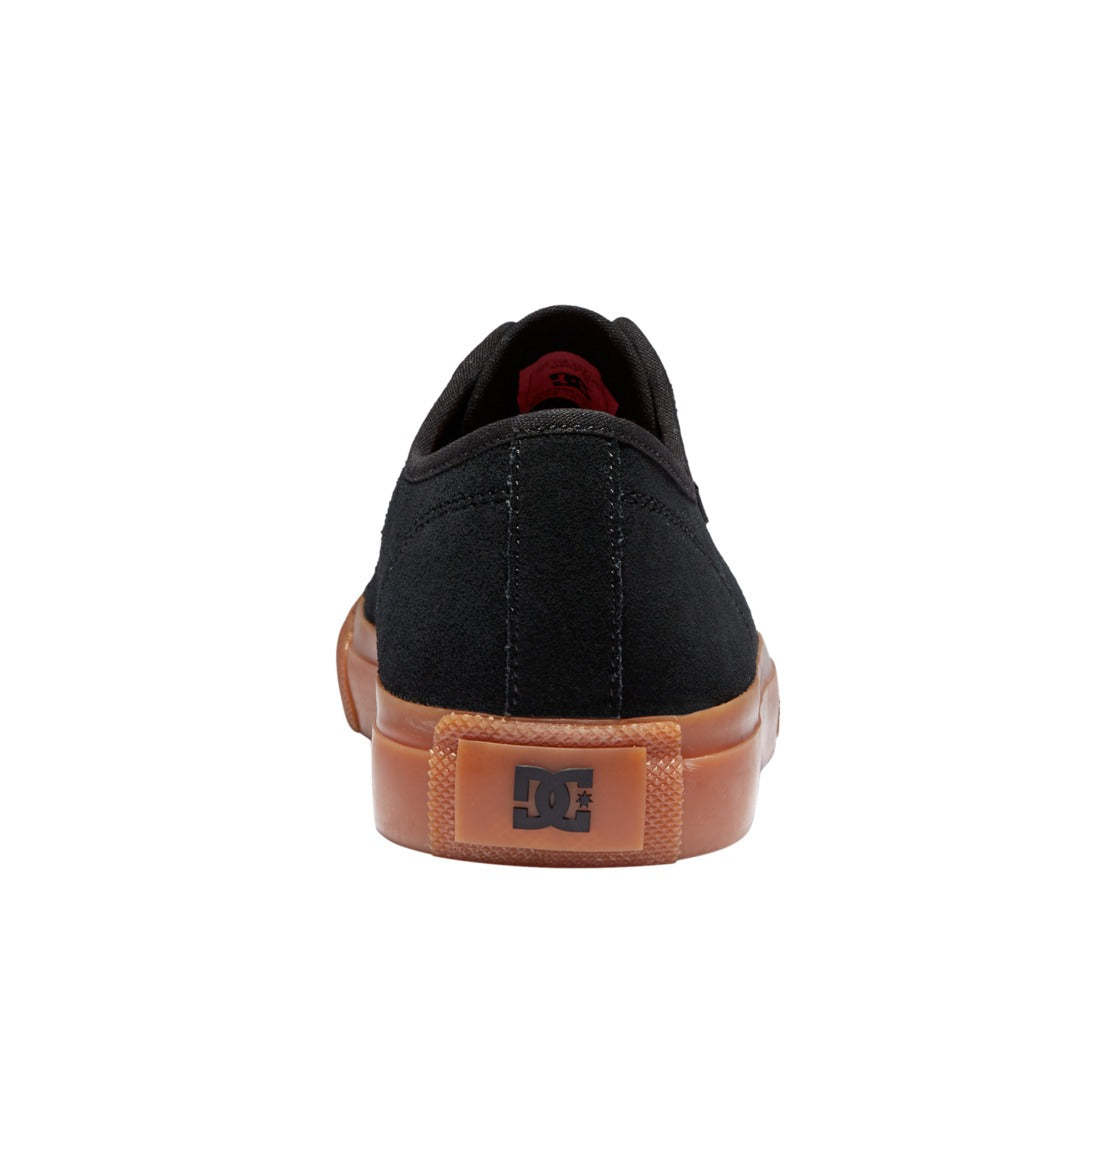 DC SHOES - Manual RT S (Black/Gum) Skate Shoes